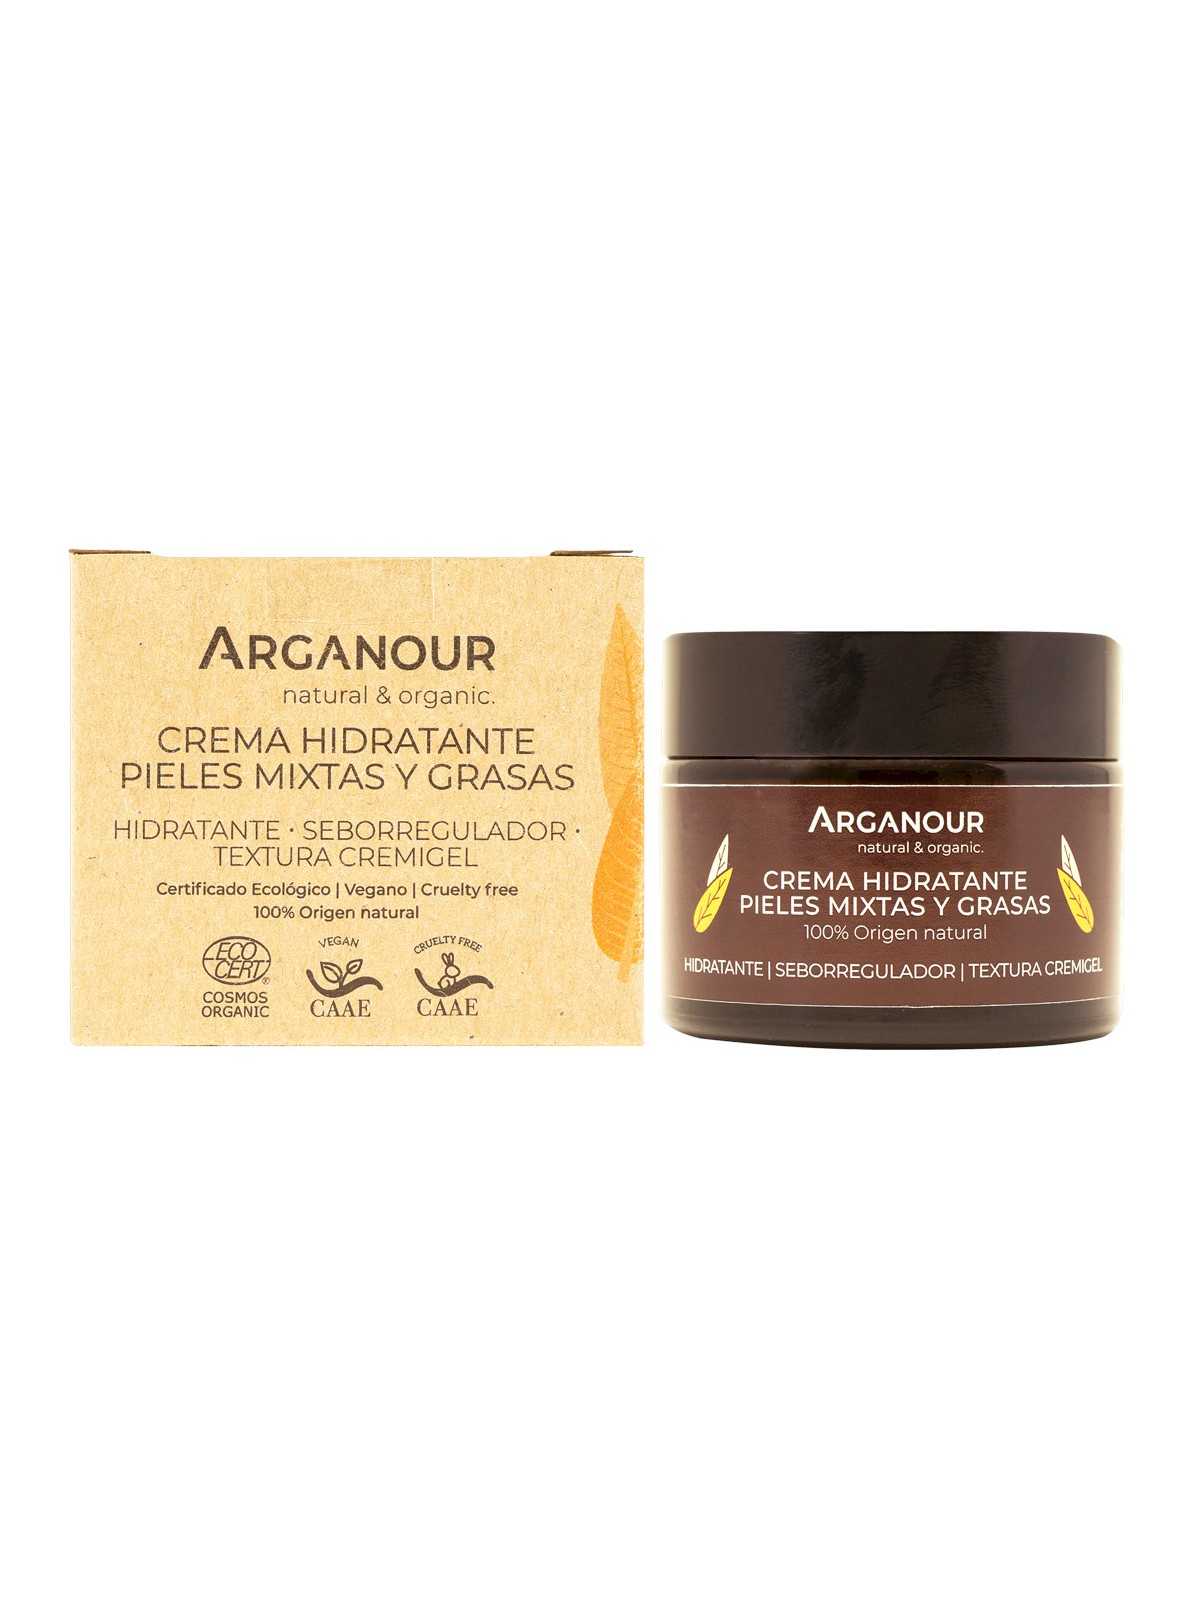 Comprar Arganour crema pieles mixtas y grasas 50ml en Inicio por sólo 11,95 € o un precio específico de 11,95 € en Thalie Care